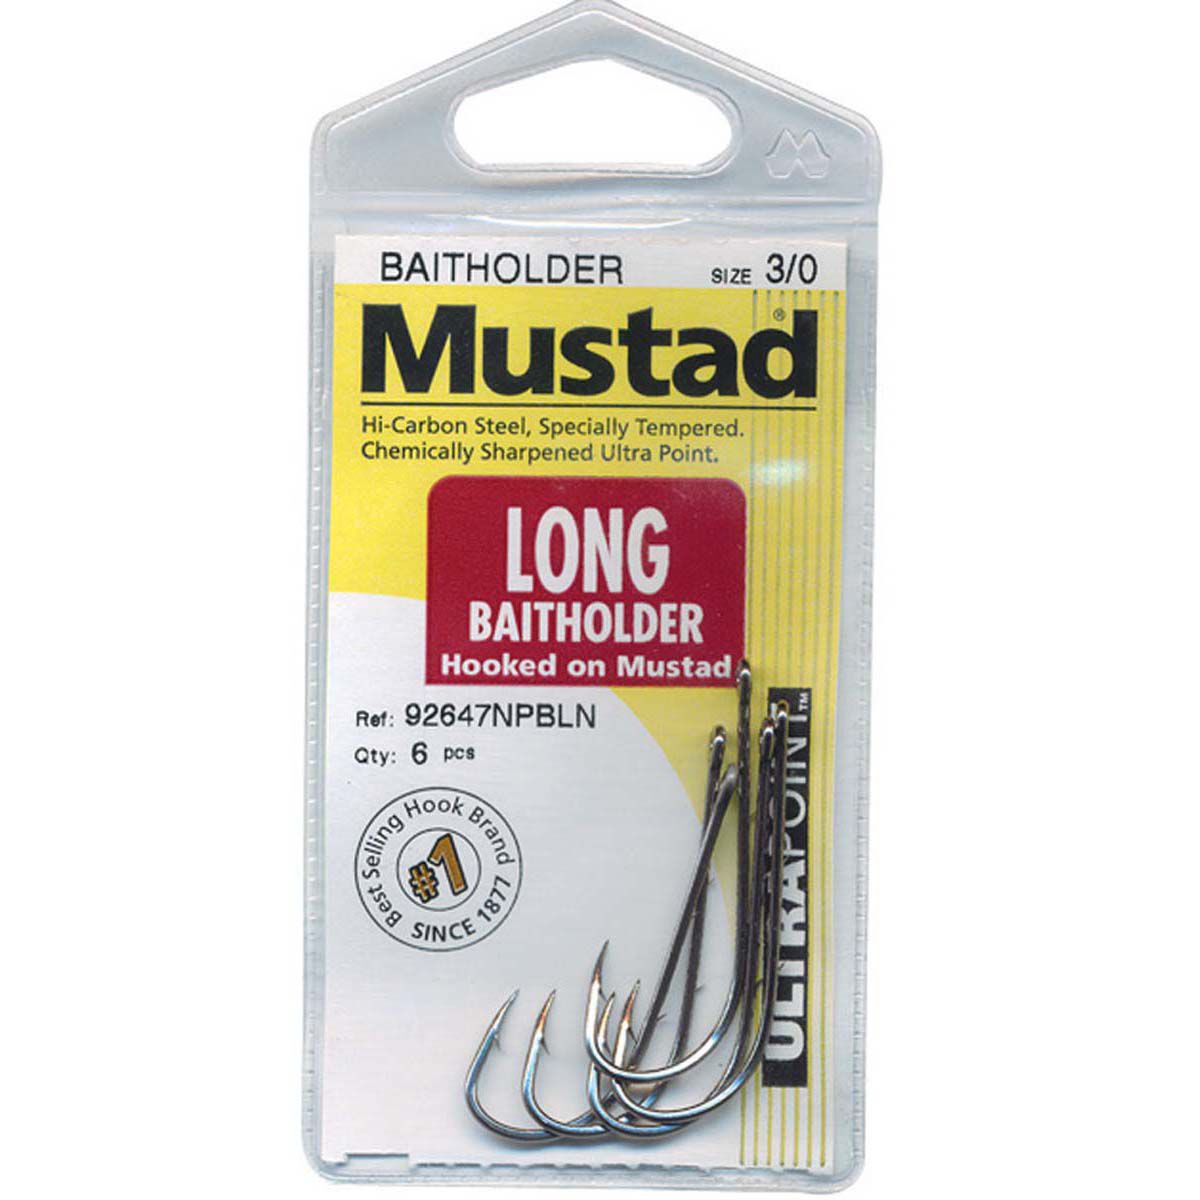 Mustad Long Baitholder Hooks 1 10 Pack